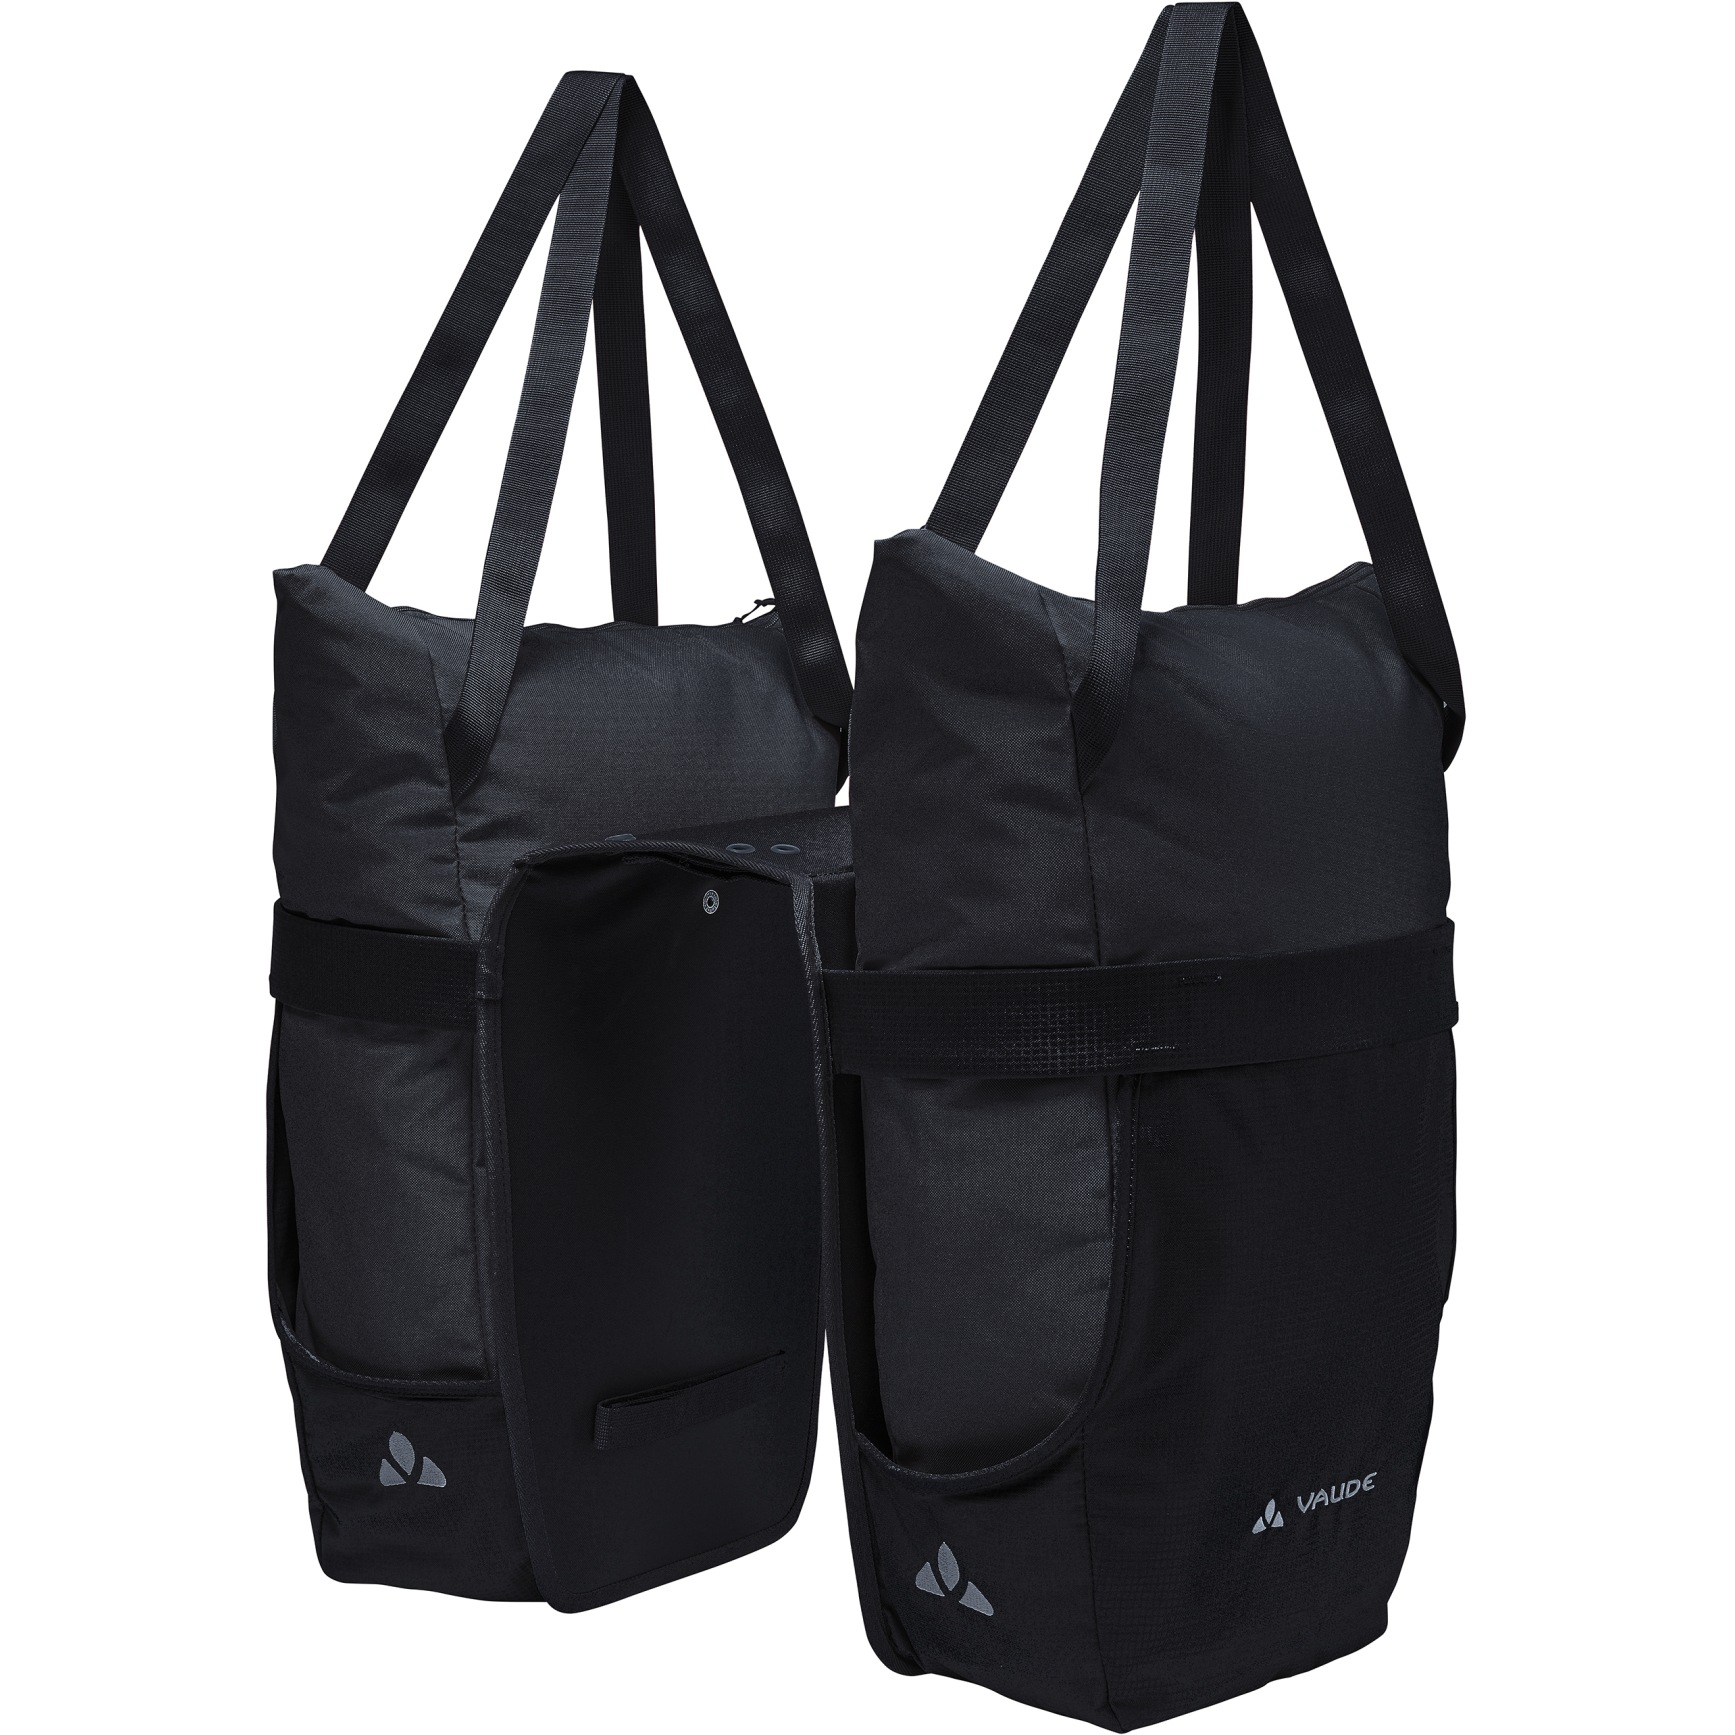 Produktbild von Vaude TwinShopper Gepäckträgertasche 2x22L - schwarz